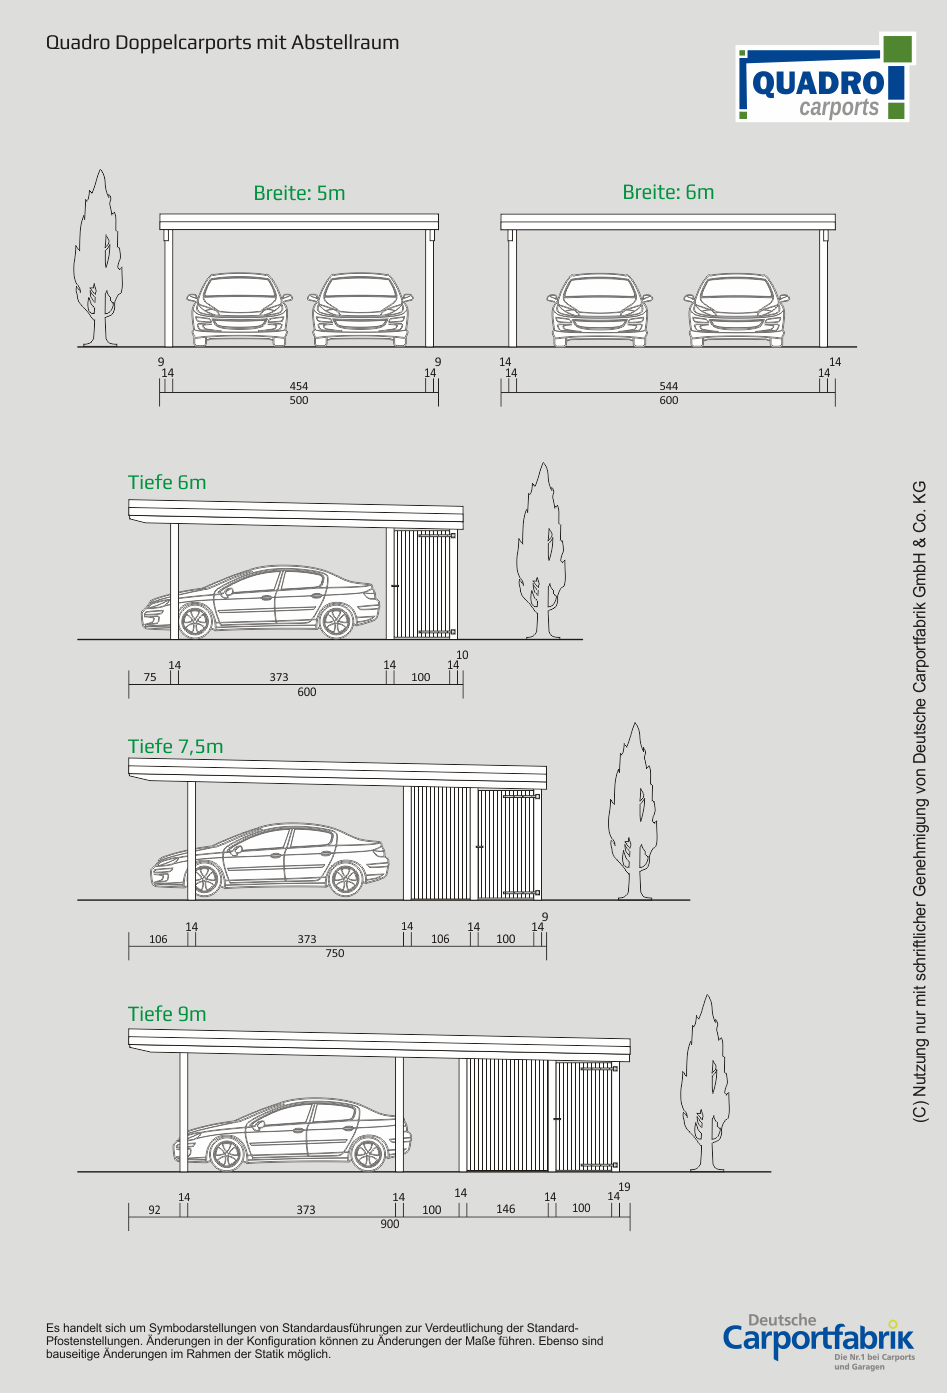 Technische Ansichten QUADRO Carports - Doppelcarports mit Abstellraum